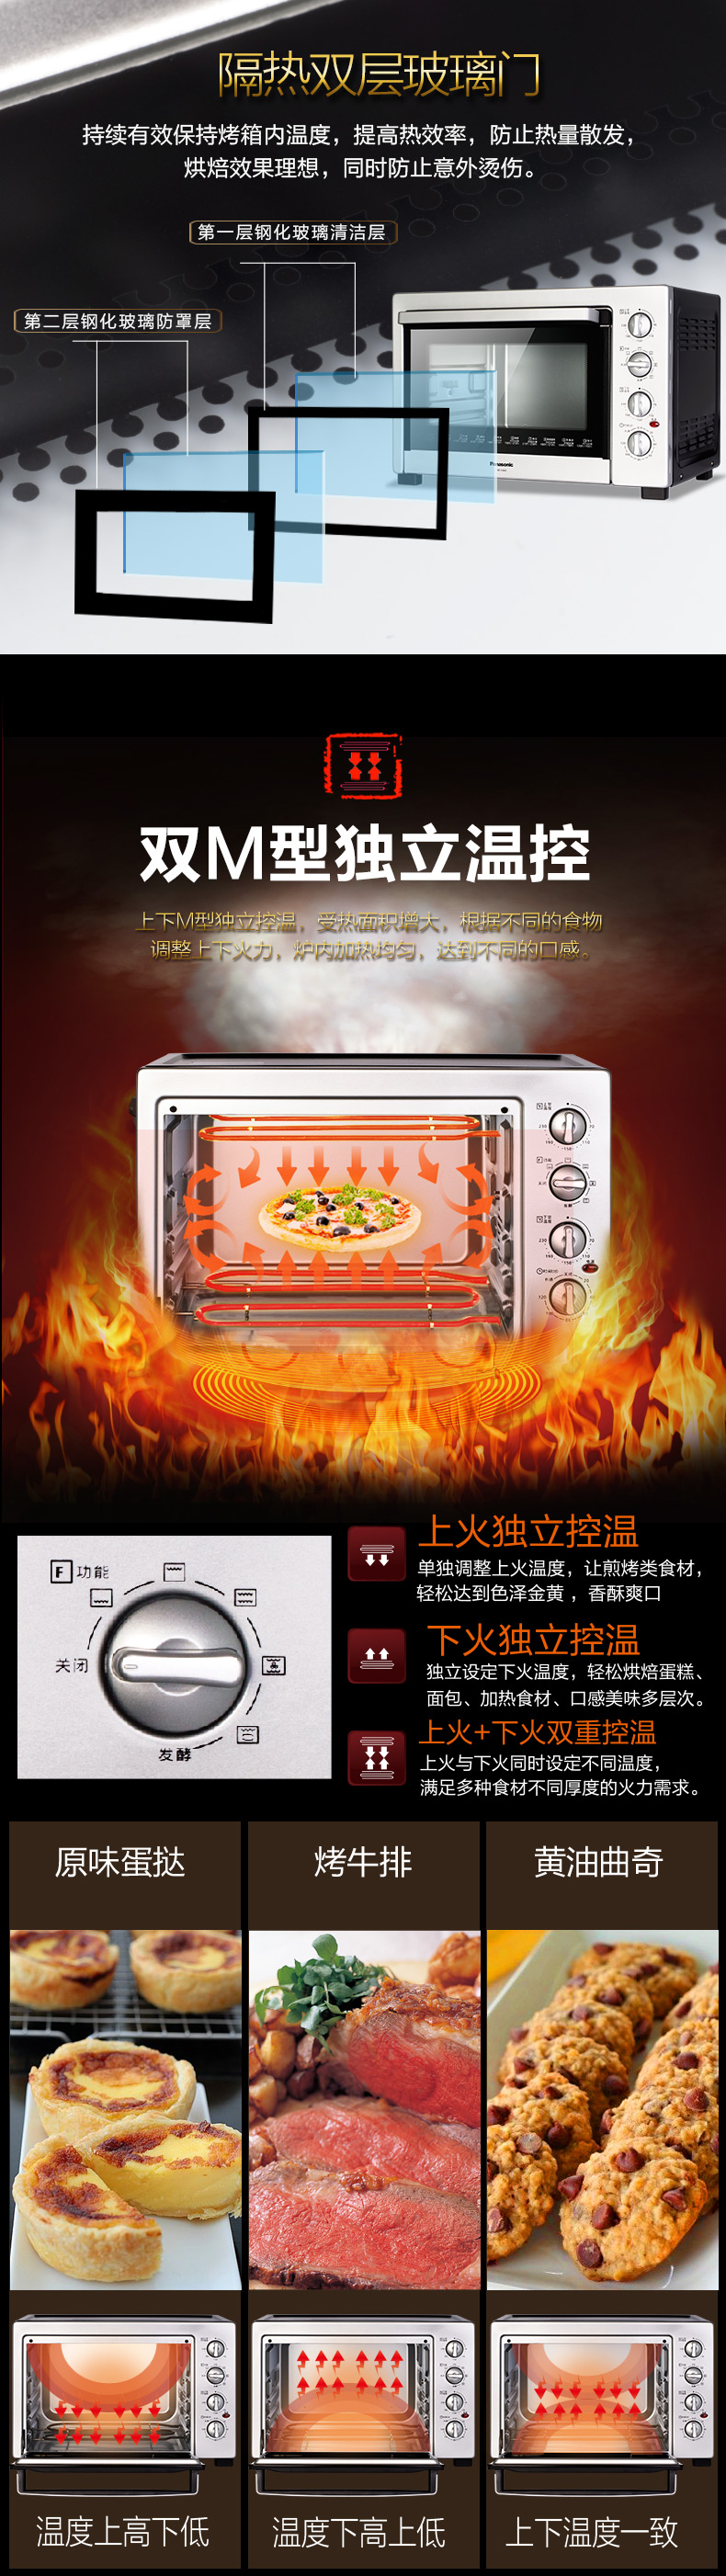 松下(Panasonic) NB-H3800 专业家用烤箱